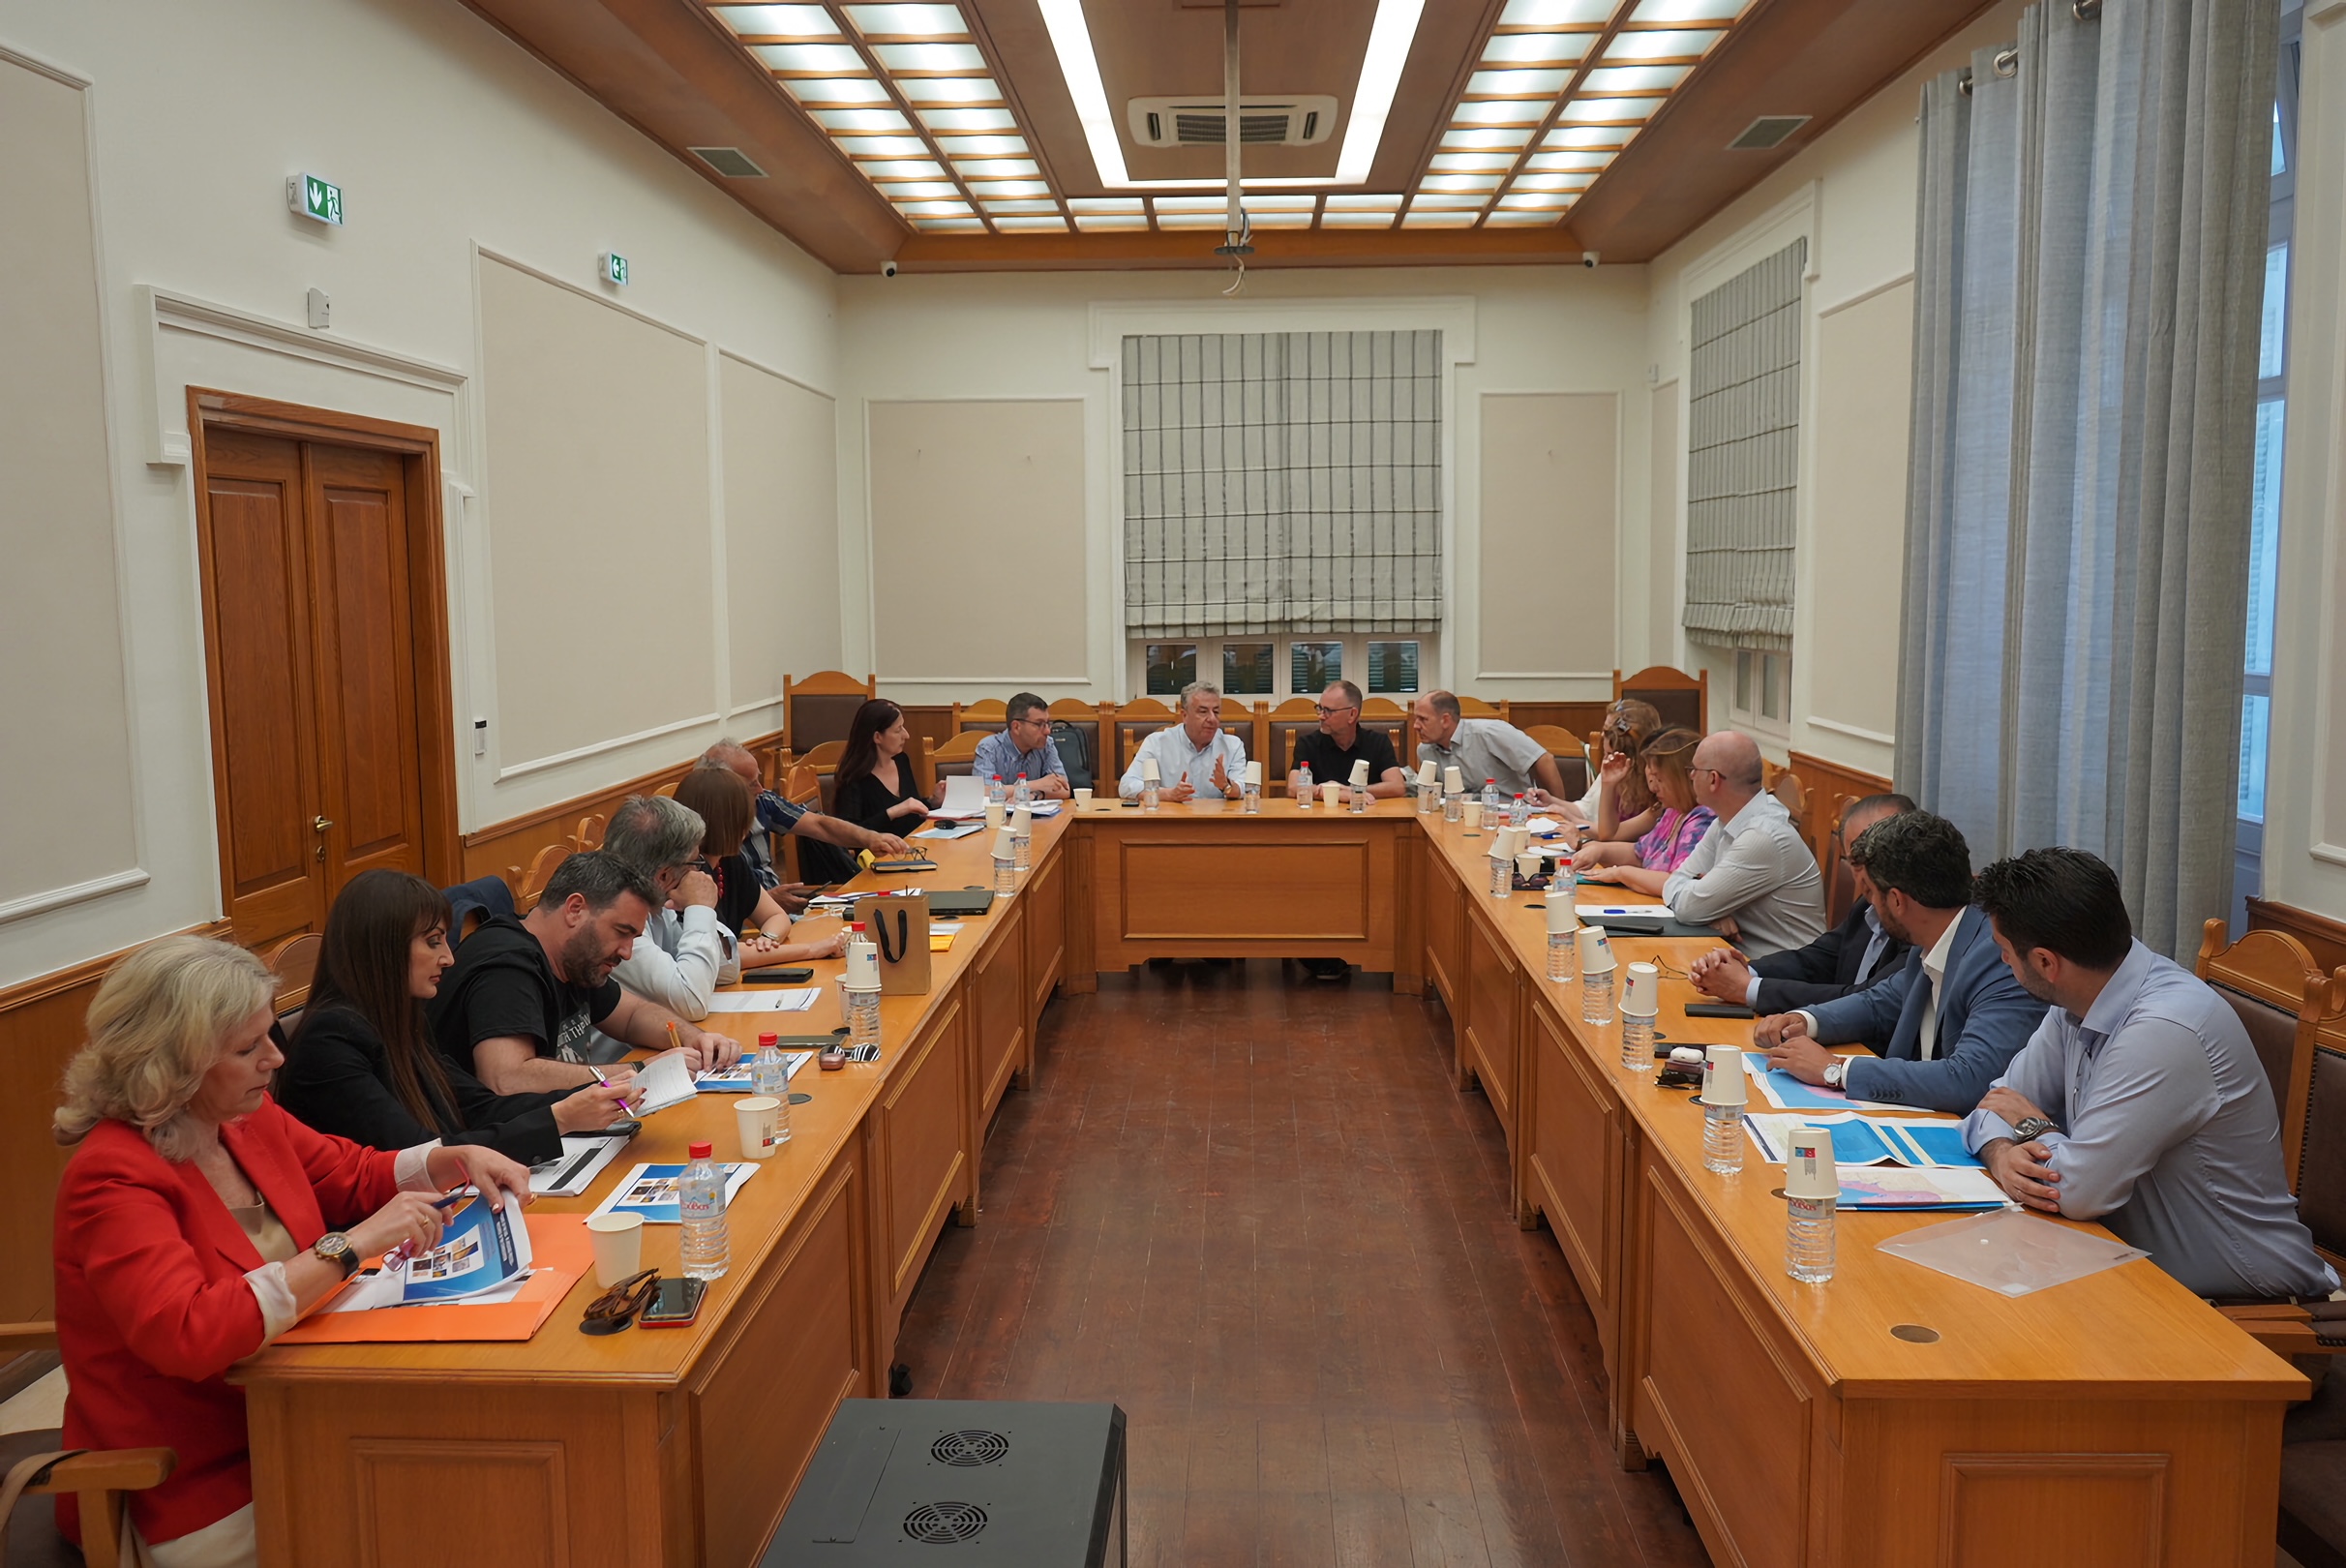  Σύσκεψη με παράγοντες της Κομισιόν για τις Στρατηγικές Βιώσιμης Αστικής Ανάπτυξης στην Κρήτη